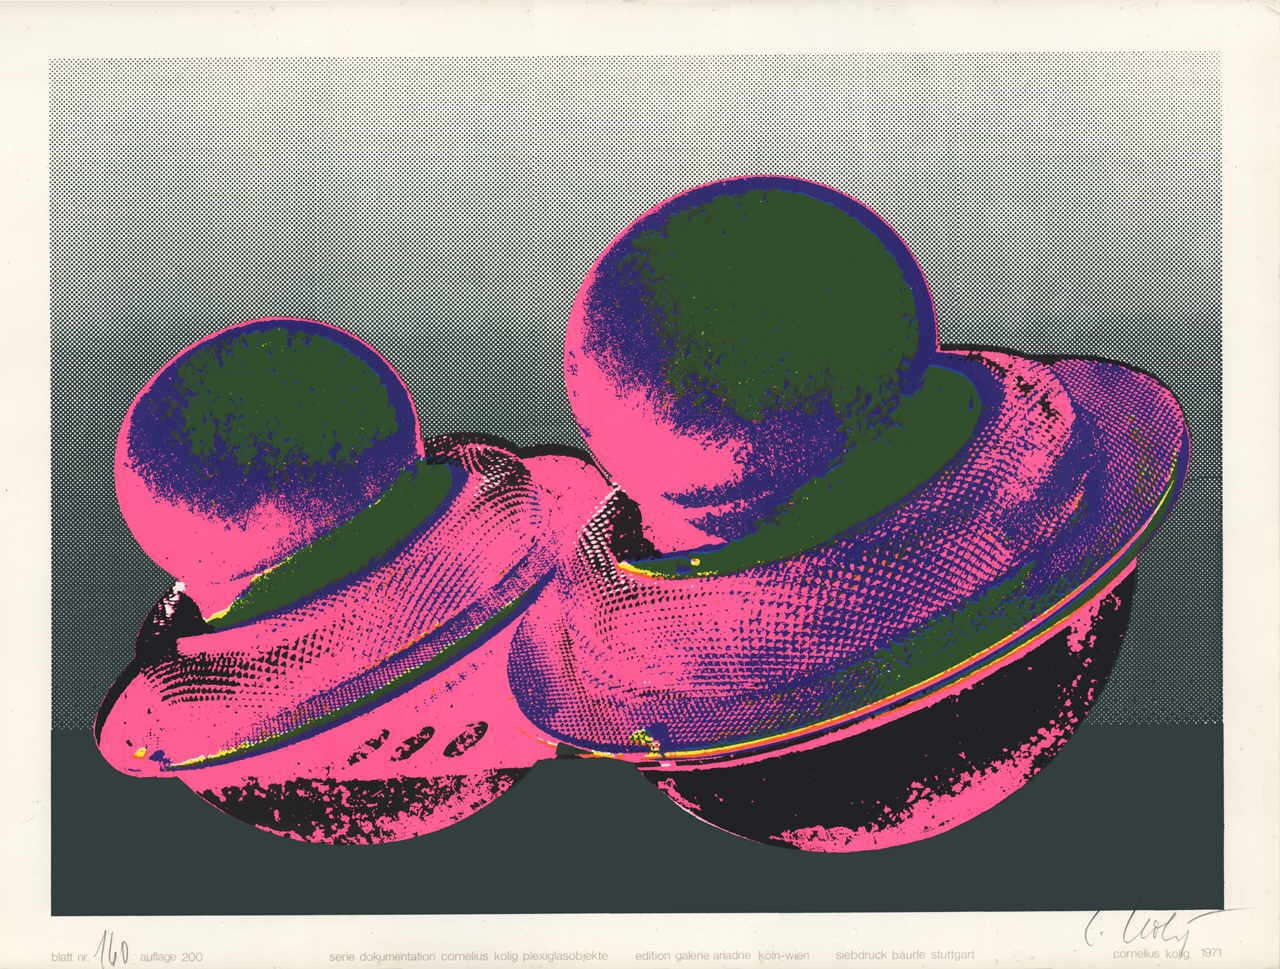 Kolig Cornelius 
Serie "Dokumentation Cornelius Kolig Plexiglasobjekte", 1971
Siebdruck
PapiergrÃ¶ÃŸe 50 x 65 cm